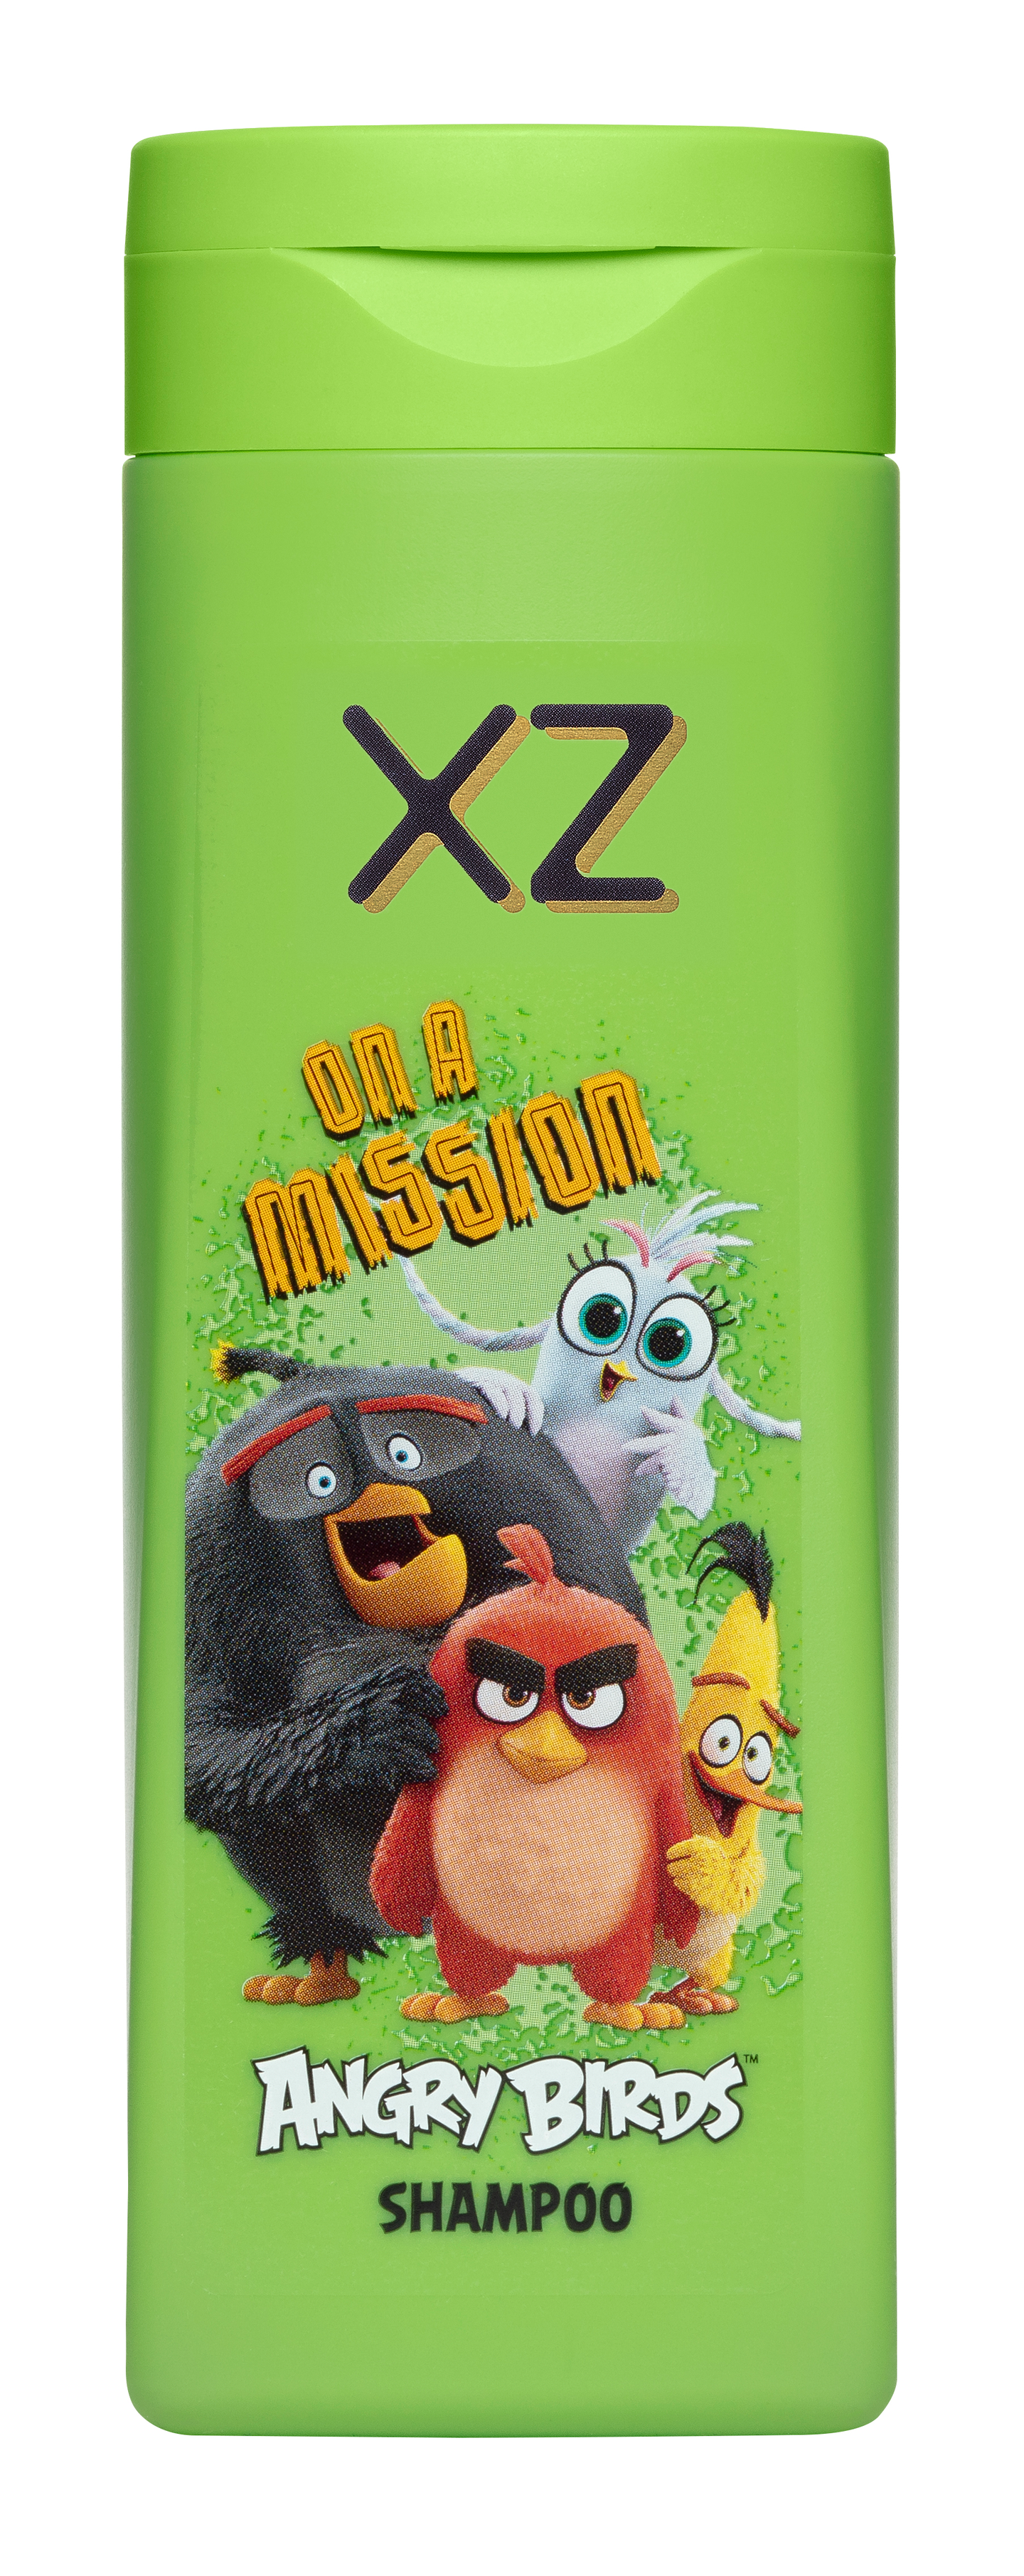 XZ shampoo 250ml Angry Birds